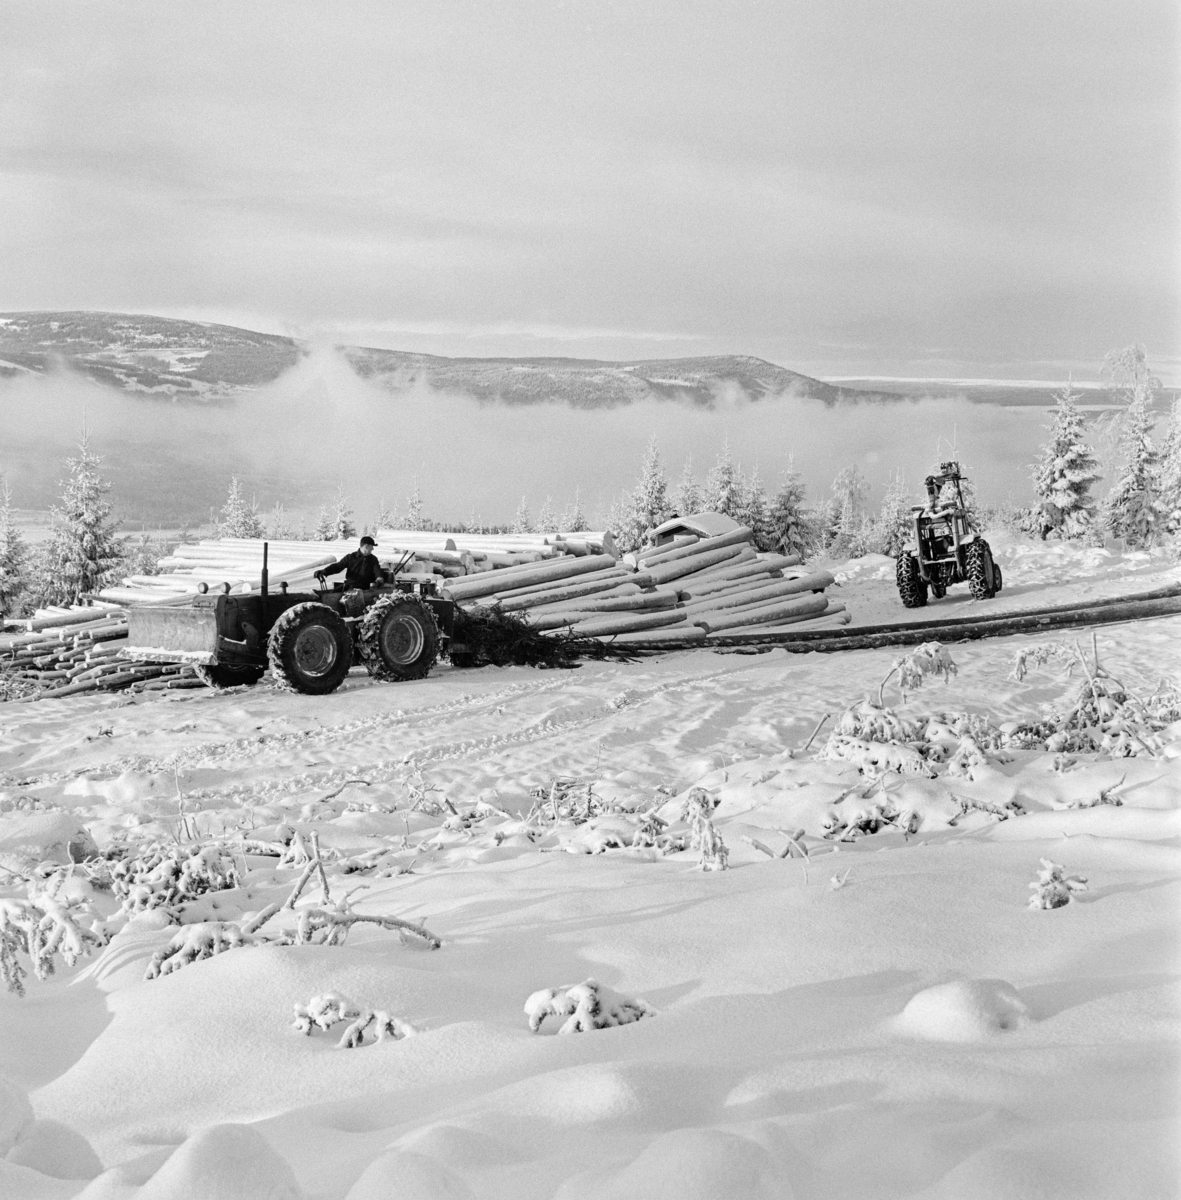 Tømmerkjøring med traktorer ovenfor Innsetsetra i Strandbygda i Elverum kommune i Hedmark vinteren 1969.  Fotografiet er tatt oppe i ei li en kald vinterdag.  Vi ser hvordan tåka ligger over dalbotnen nedenfor.  I forgrunnen arbeides det med to traktorer ved en velteplass.  Bak tømmeret skimter vi taket på ei kvilebrakke.  Ifølge nåværende eier av den skogen der fotografiet er tatt ble tømmeret lunnet med en 1958-modell Fordson major super county som var påmontert en totromlet Isachsen-vinsj.  Den andre traktoren er antakelig en 1969-modell Ferguson 178 med griplaster fra produsenten Vendelbjørn. Bruk av traktorer til framkjøring av tømmer fra hogstfeltene i skogen til velteplasser ved bilveg der det kunne hentes og transporteres videre på lastebiler ble raskt vanlig i 1950- og 60-åra. Etter hvert ble det også gjort forsøk med lunning av helstammer - altså tømmer som ikke var "aptert".  Innføringa av slike driftsprinsipper var nært knyttet til den rammestyrte traktorteknologien.  Den første rammestyrte skogstraktoren for stammelunning ble hentet til Norge i 1962 i et samerbeid mellom Skogforsøksvesenet og Meraker Brug.  Vinteren 1969 fantes det 233 slike maskiner i Norge, flest i de store skogfylkene med Hedmark og Telemark i spissen.  En noe velvillig kalkyle antydet at disse rammestyrte traktorene vinteren 1969 tok unna bortimot 20 prosent av lunningskvantumet.  En aktør i det skogteknologiske forskingsmiljøet tilskrev stammelunneren og motorsaga hovedæren for at tariffutviklinga i skogbruket hadde tatt ei - for skogeierne - gunstig vending.  Traktorer med tømmertilhenger og griplasterkran ble lansert som en nyhet i slutten av 1960-åra.  Da hadde den svenske produsenten HIAB lansert sin "skogselefant".  Her til lands var skogteknologene skeptiske til denne maskintypen.  Med den norske eiendomsstrukturen og i norsk terreng var det helstammelunnerne som var framtidsrettet, hevdet de.  Mjøsen, Glommen og Nedre Glommen skogeierforeninger satte likevel i gang forsøk med det de kalte «kombinasjonsmaskiner» - traktorer med griplastere og boggidoninger.  Etter hvert var det denne teknologien som vant fram.  Skogteknologene kalte dem for «lastetraktorer», mens maskinforhandlerne brukte betegnelsen «lassbærer», for å tydeliggjøre at det tømmeret man fikk fram ikke ville være sølete og tilgriset, slik stammelunnet virke kunne være, i hvert fall i sommerhalvåret.  Traktoren til høyre på dette fotografiet hadde kran med gripeklo, men ikke boggitilhenger av den typen som de svenske produsentene leverte.